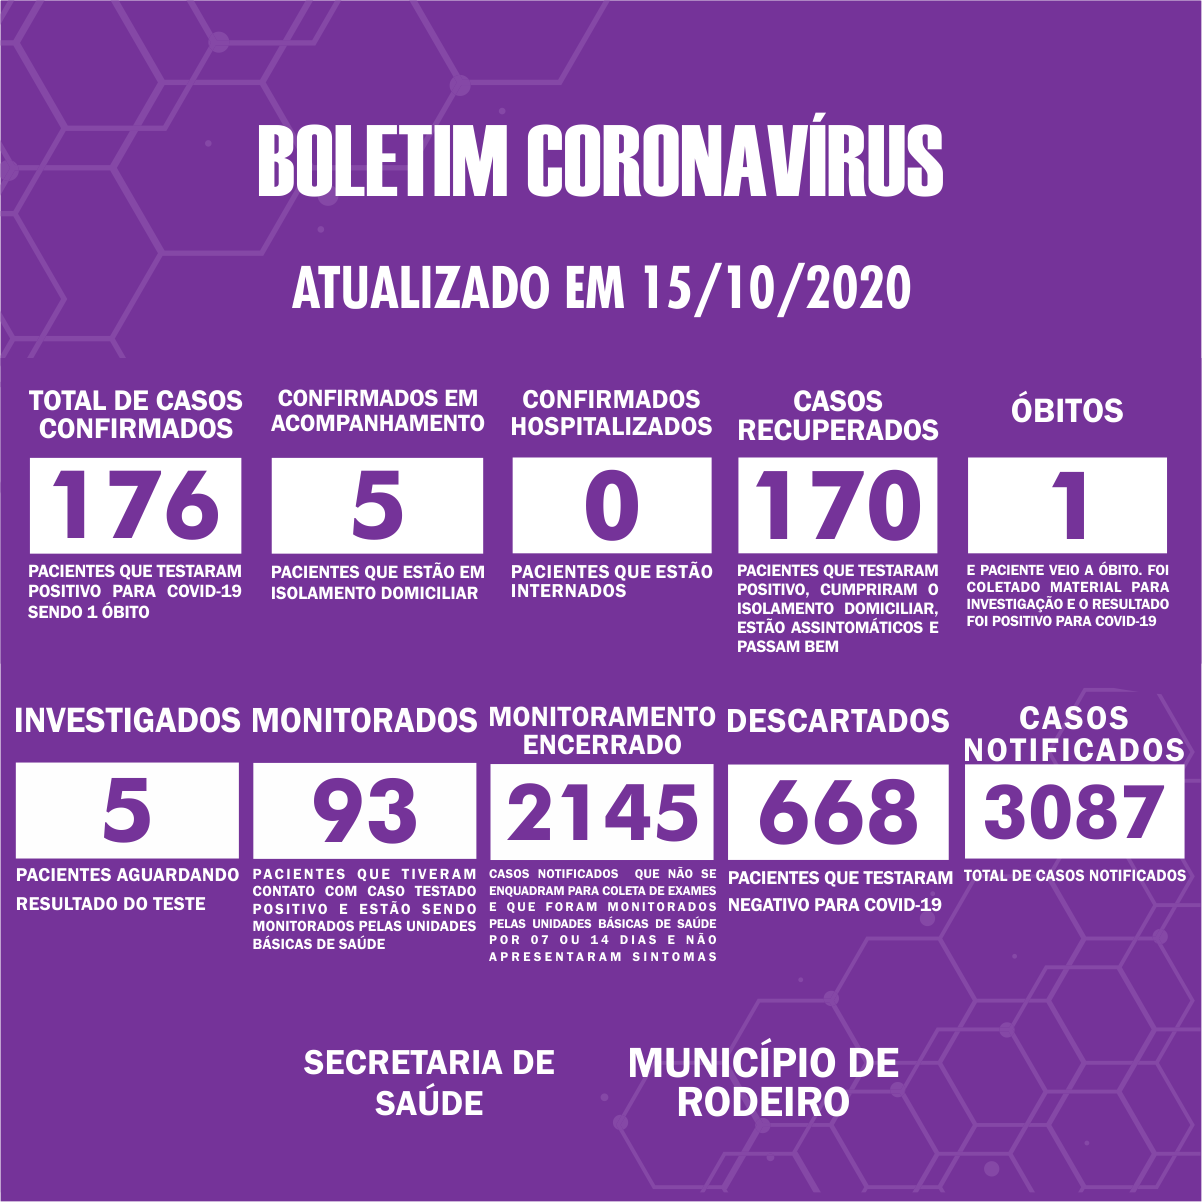 Boletim Epidemiológico do Município de Rodeiro sobre coronavírus, atualizado em 15/10/2020